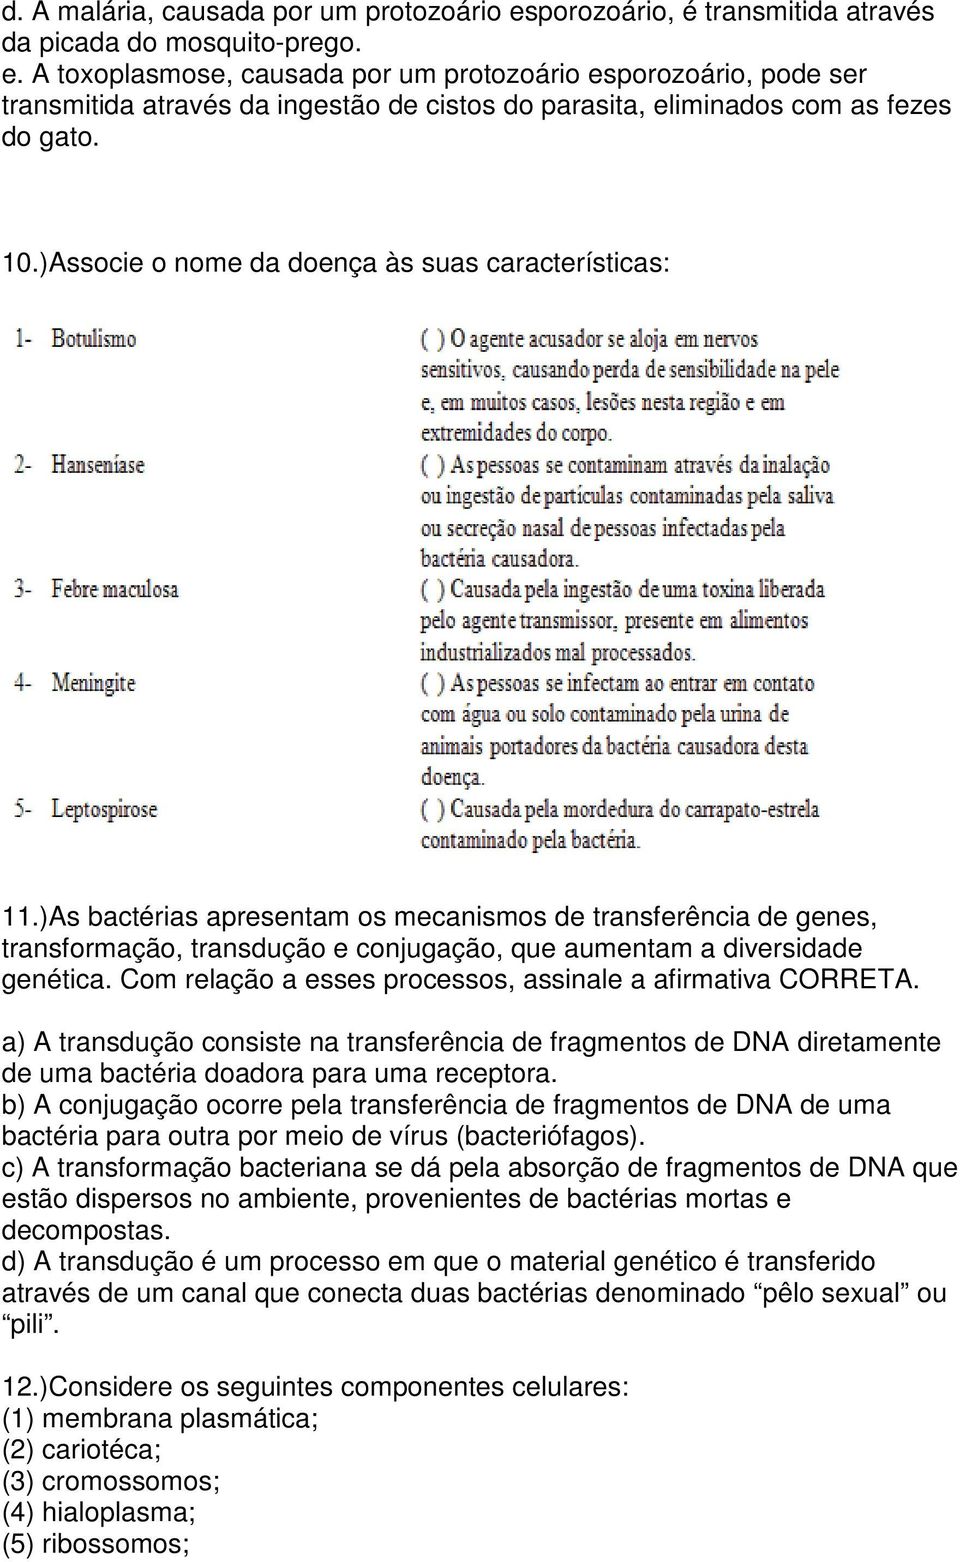 Com relação a esses processos, assinale a afirmativa CORRETA. a) A transdução consiste na transferência de fragmentos de DNA diretamente de uma bactéria doadora para uma receptora.